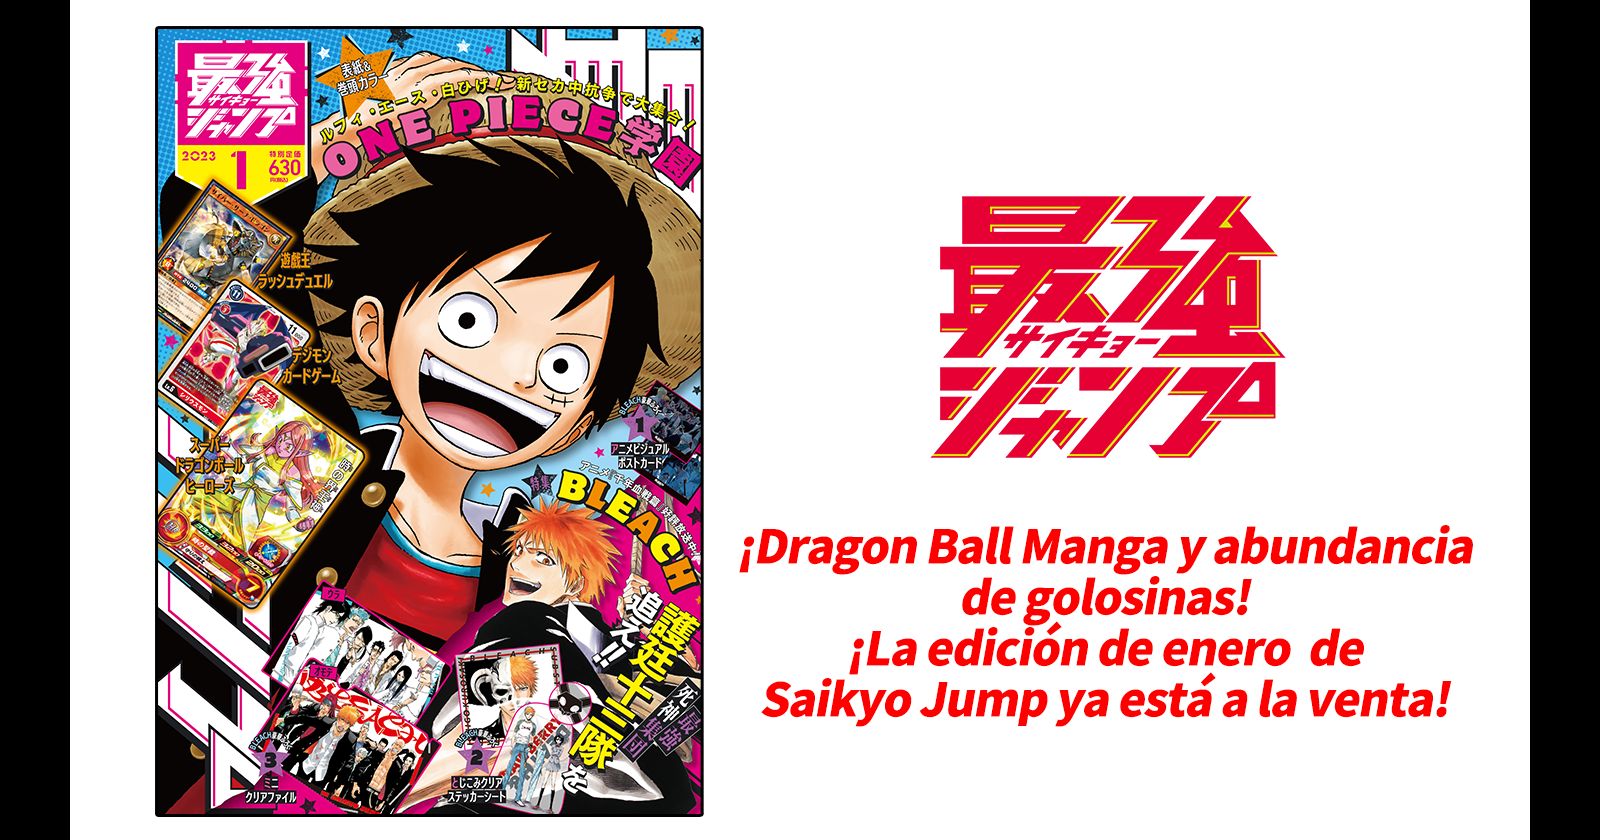 ¡El número especial de enero de Saikyo Jump, que está actualmente a la venta, está lleno de pelaje y manga de "Dragon Ball"!